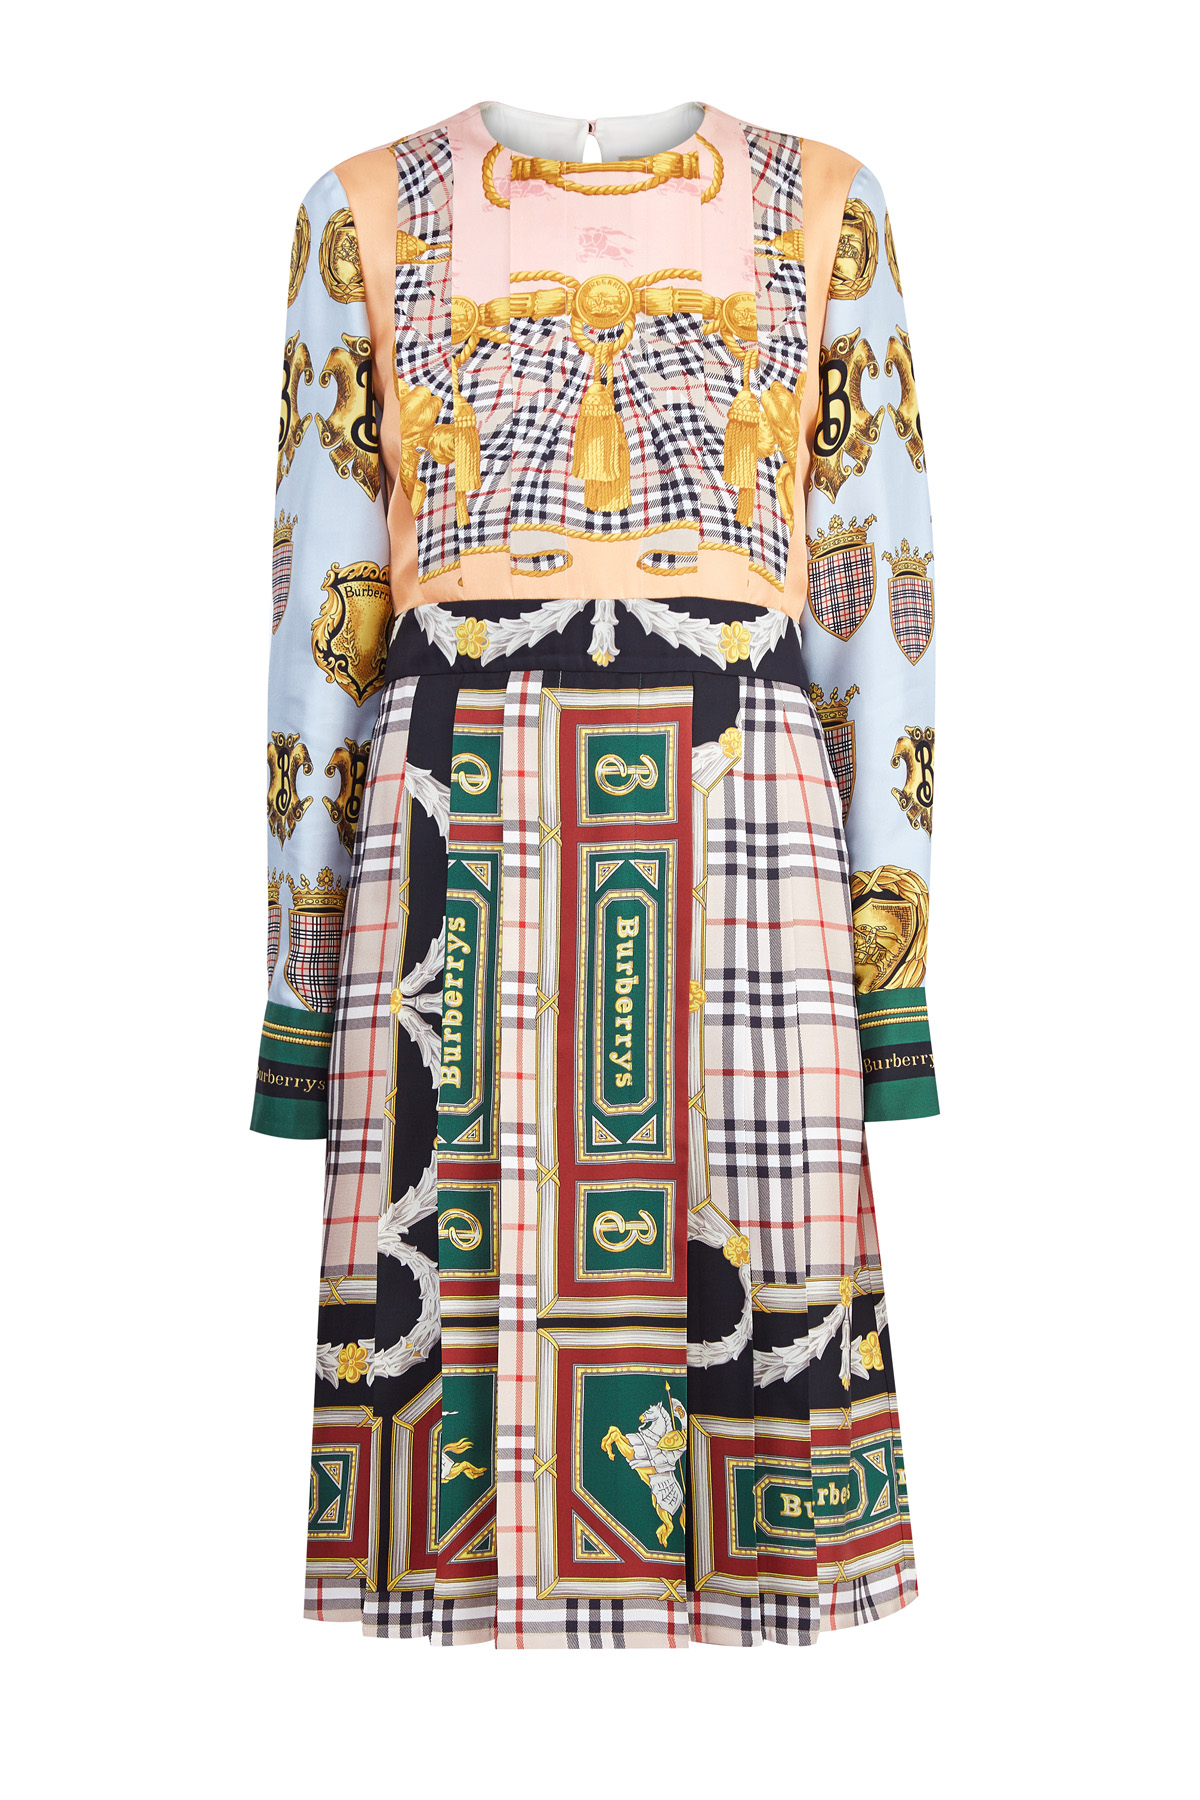 Платье из шелка с многообразием фирменных принтов из архивов бренда BURBERRY, цвет мульти, размер 10 - фото 1